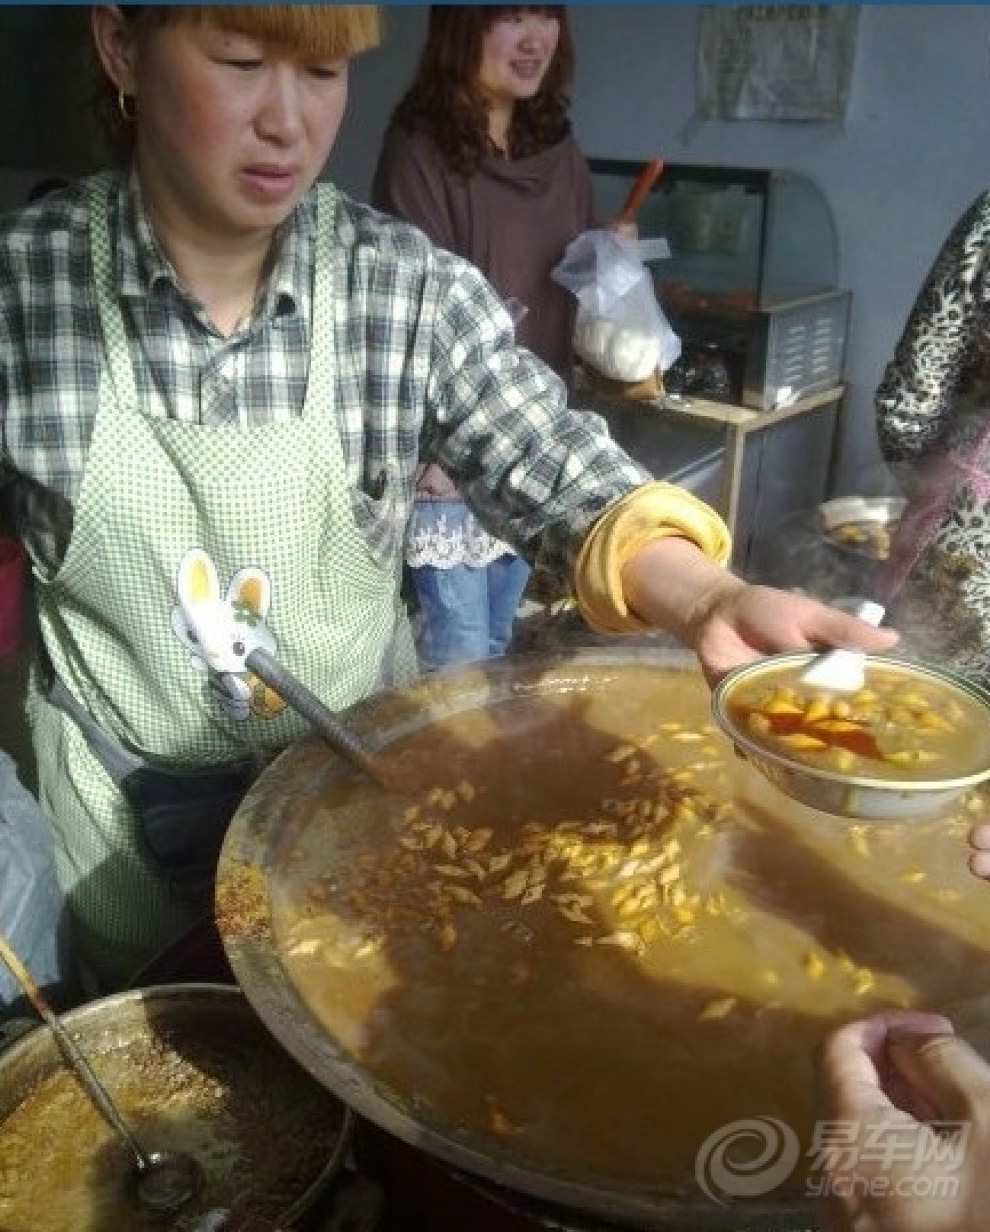 推荐一个宁陵县名吃:范家哨子汤